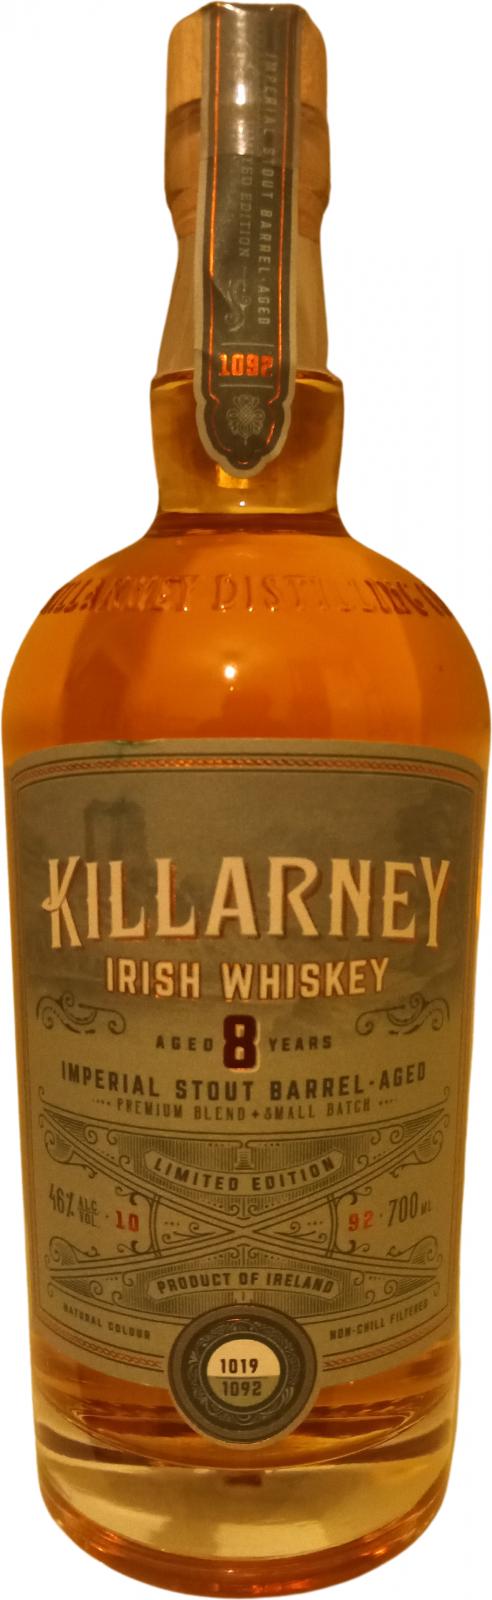 Killarney Irish Whiskey 08-year-old KDgC